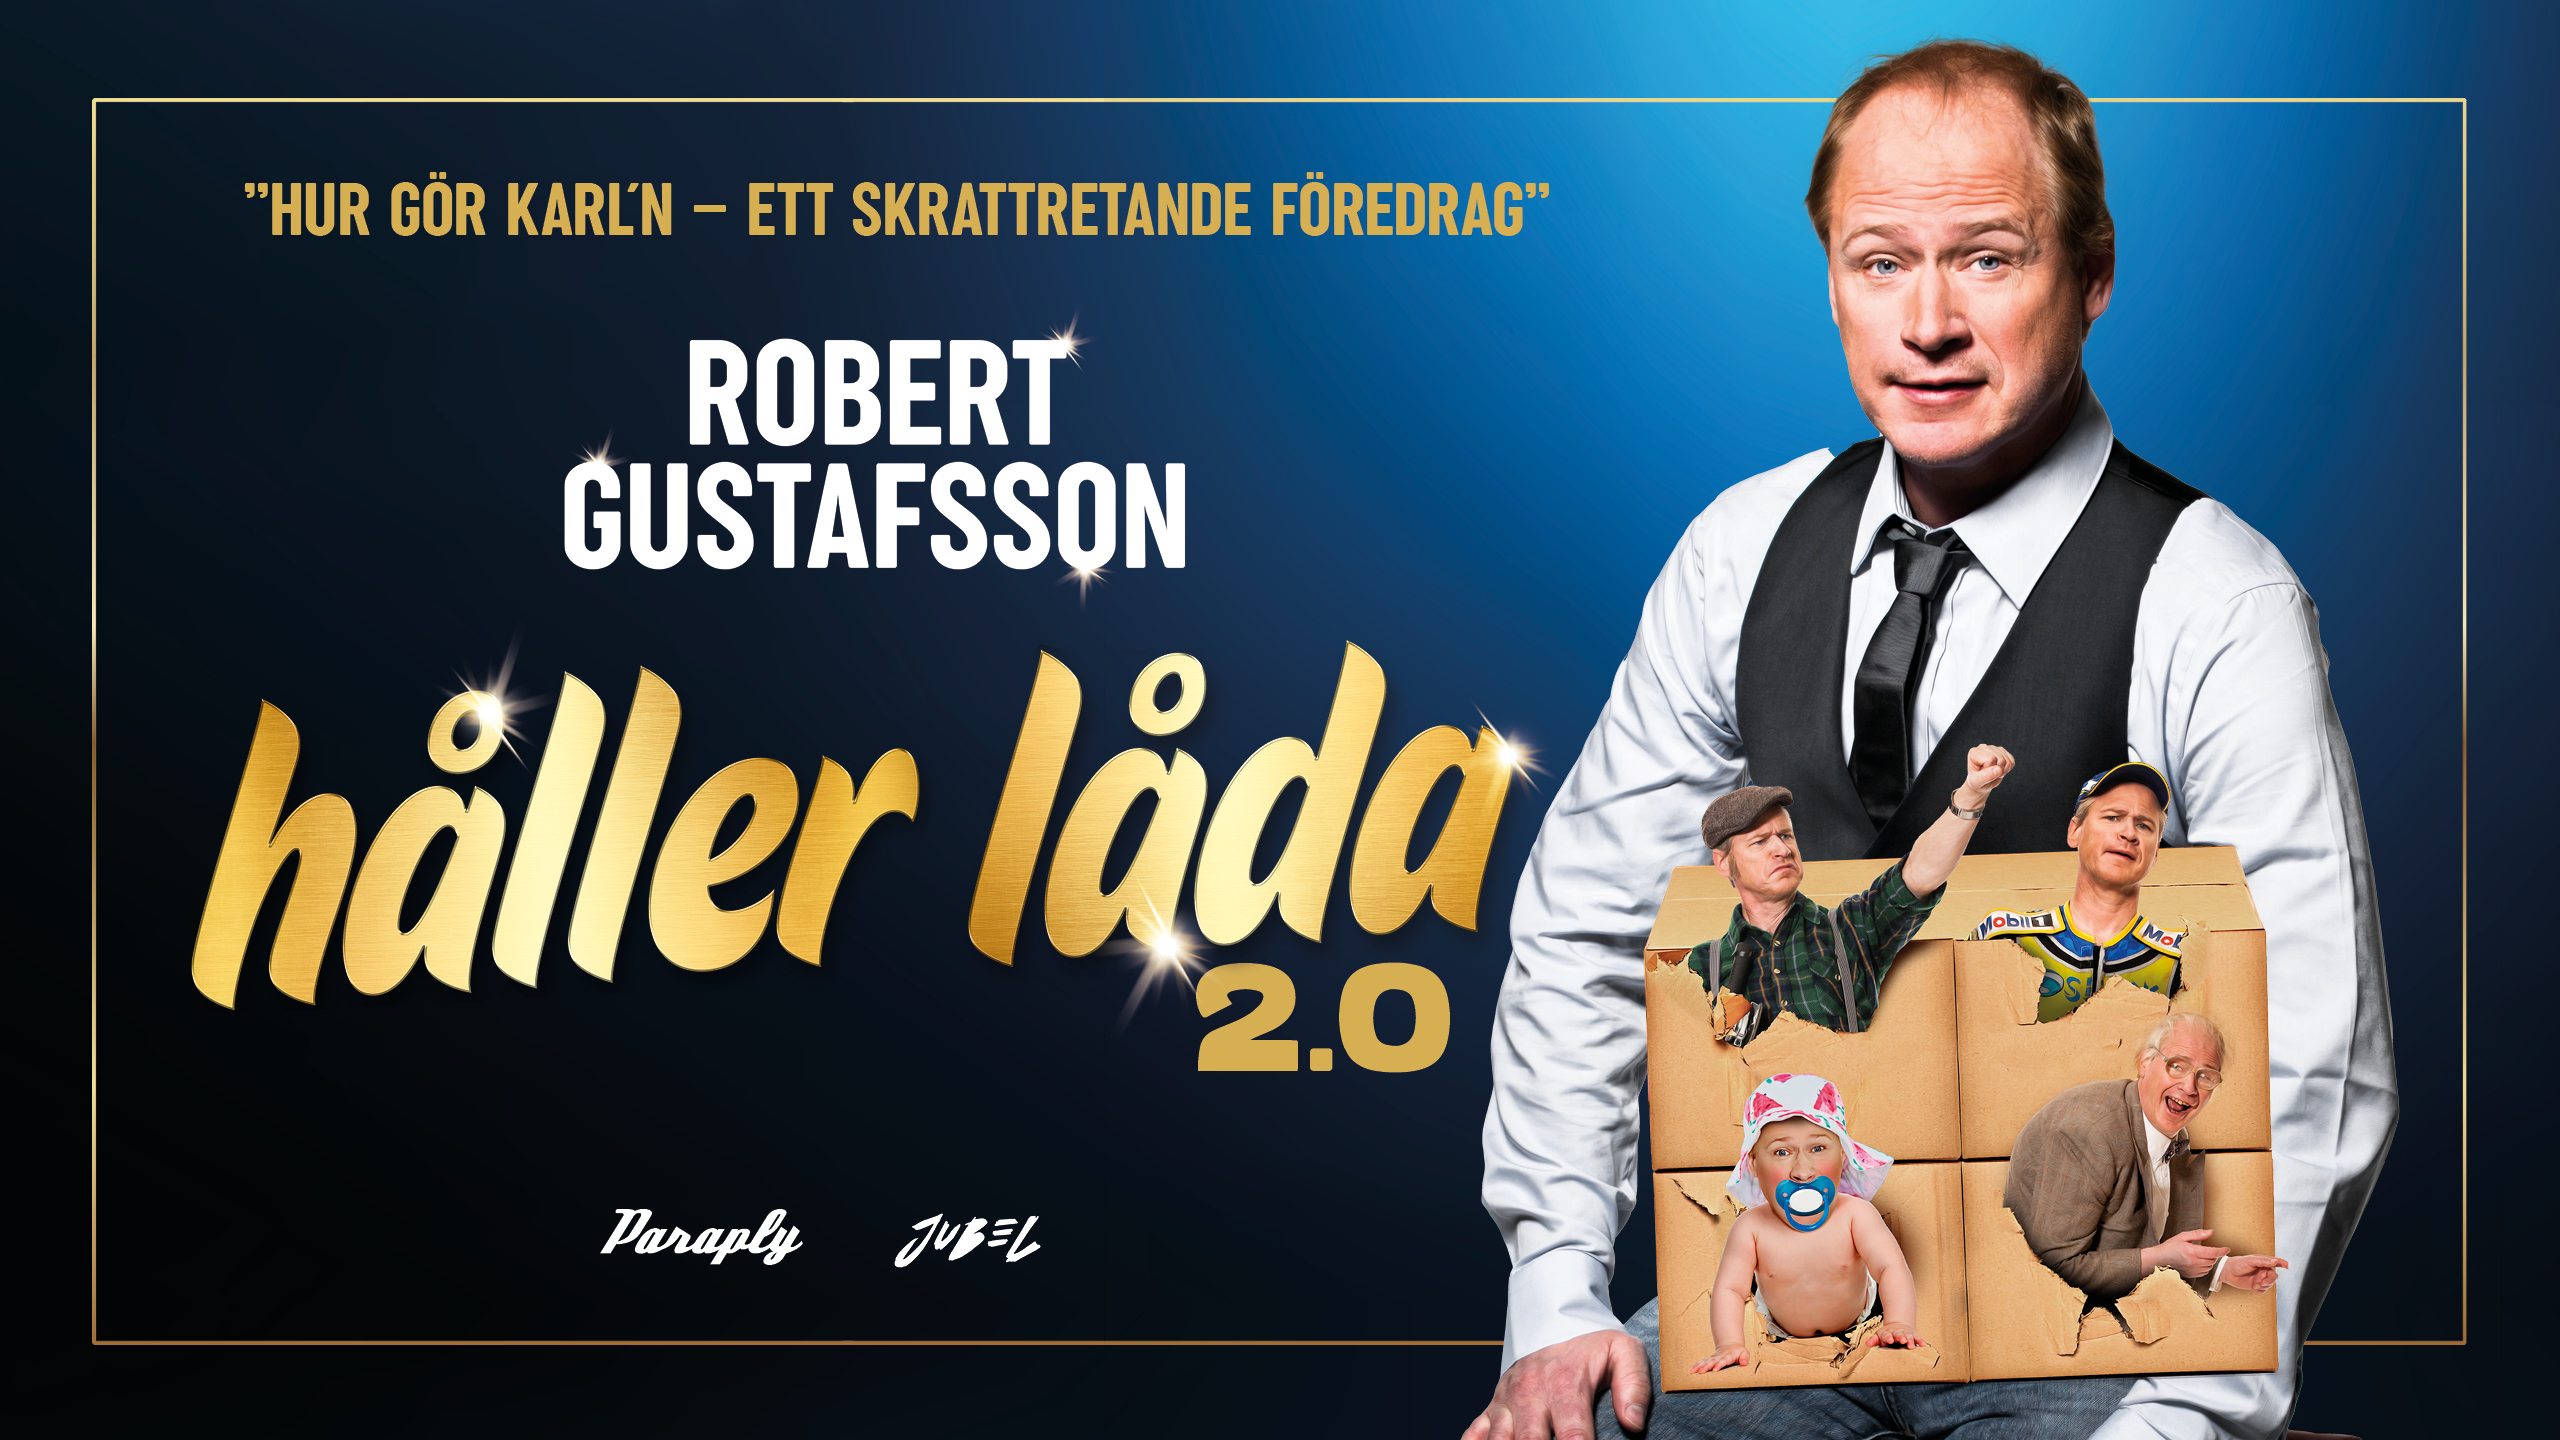 Robert Gustafsson håller låda 2.0